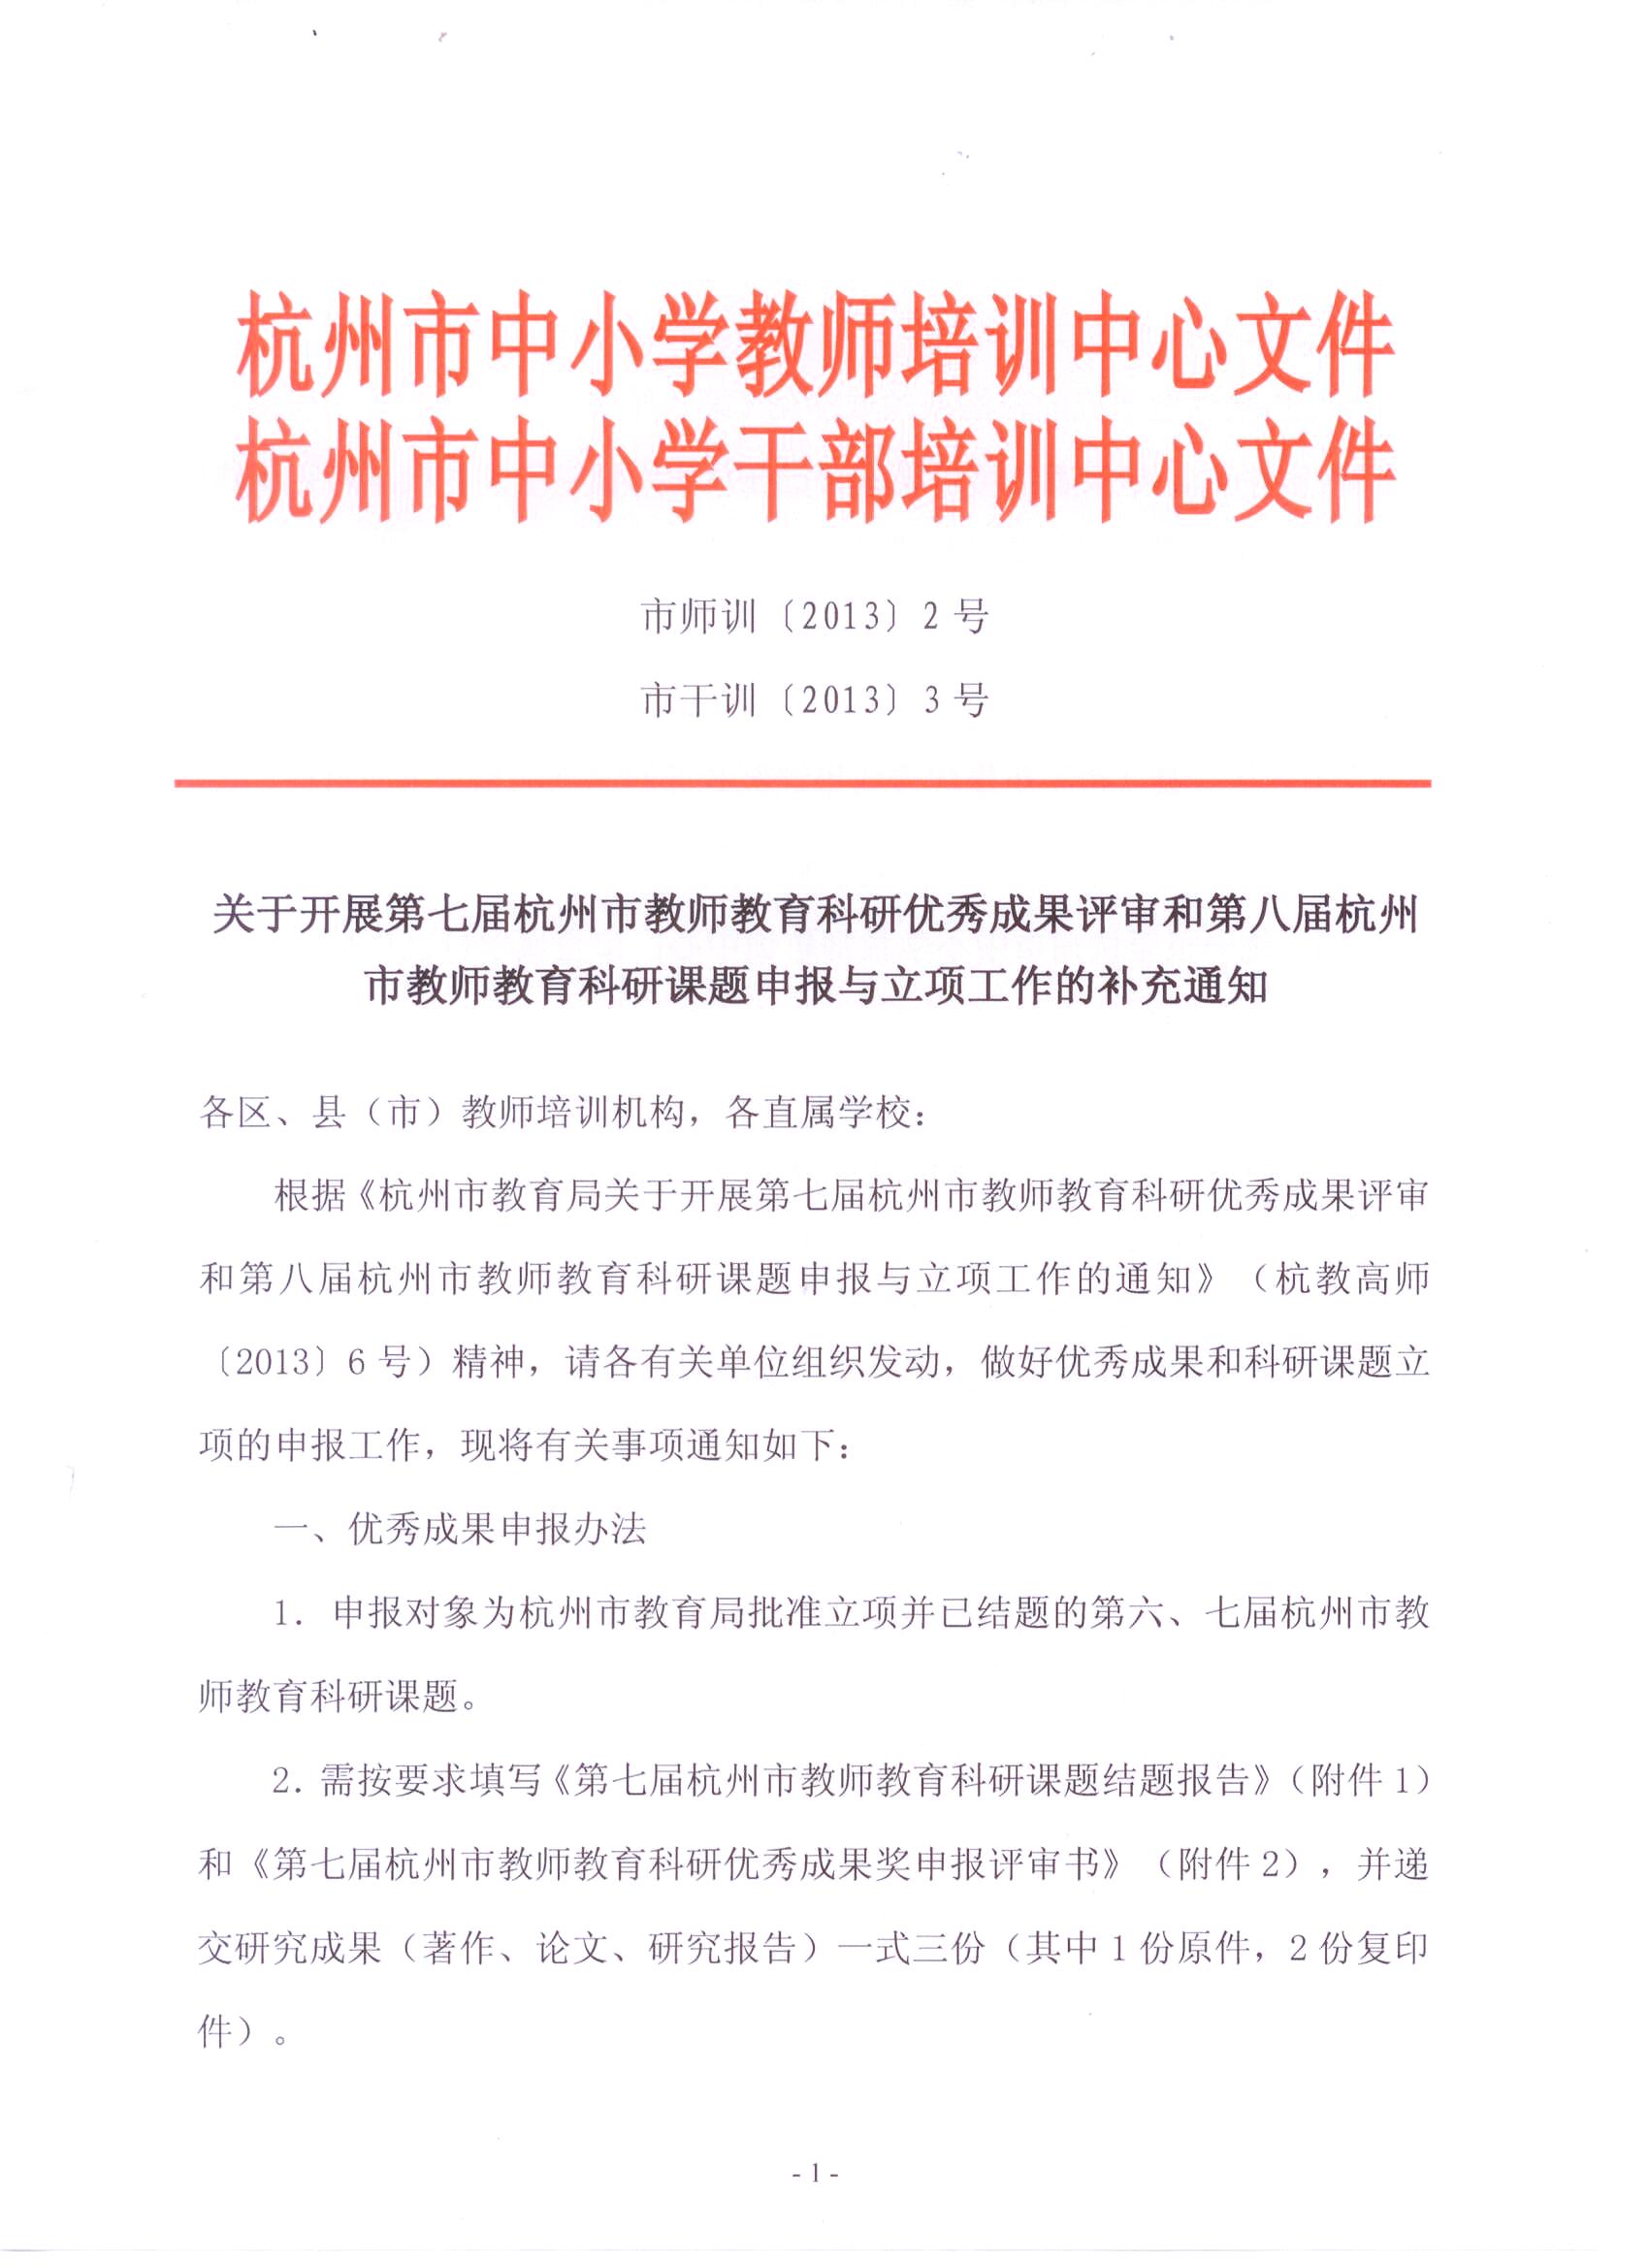 关于开展第七届杭州市教师教育科研优秀成果评审和第八届杭州市教师教育科研课题申报与立项工作的补充通知